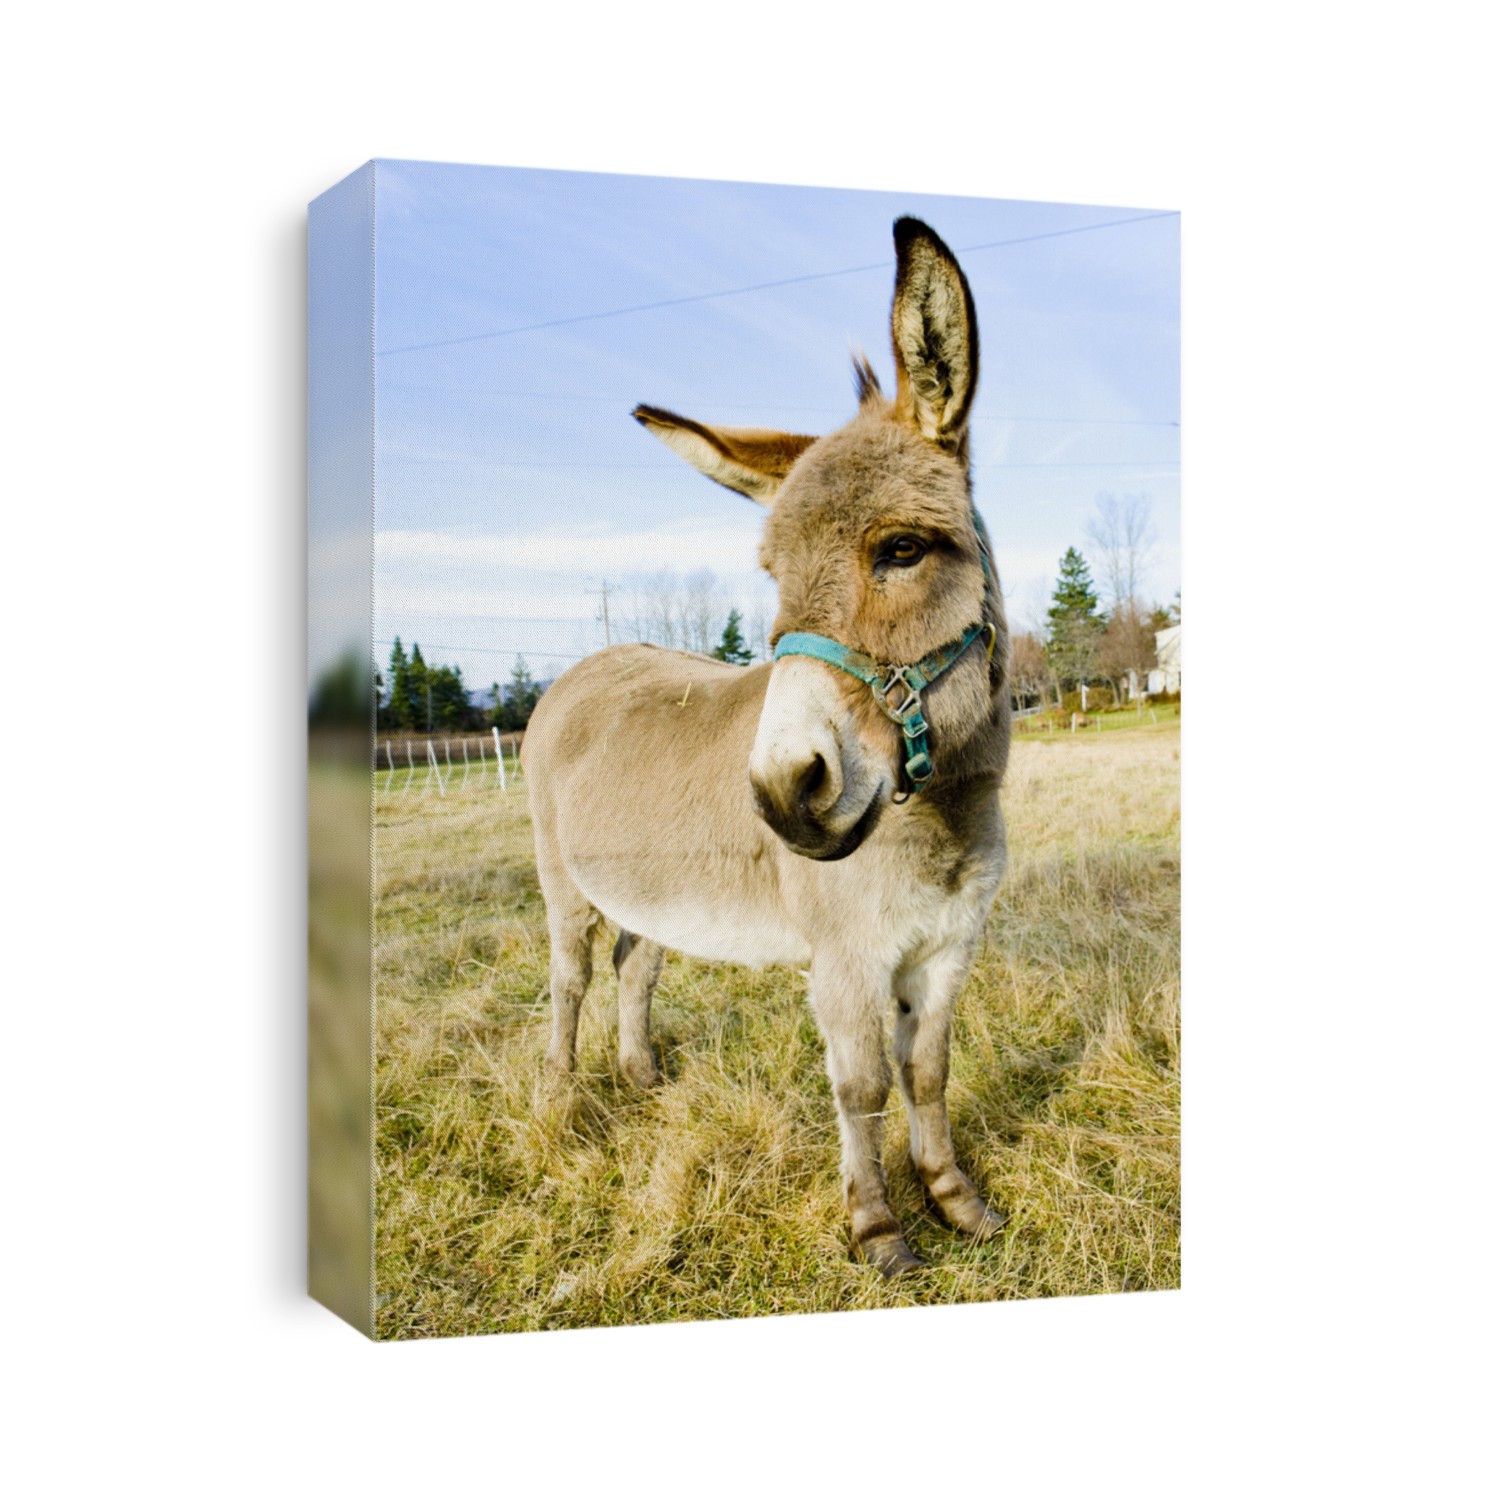 donkey, Vermont, USA